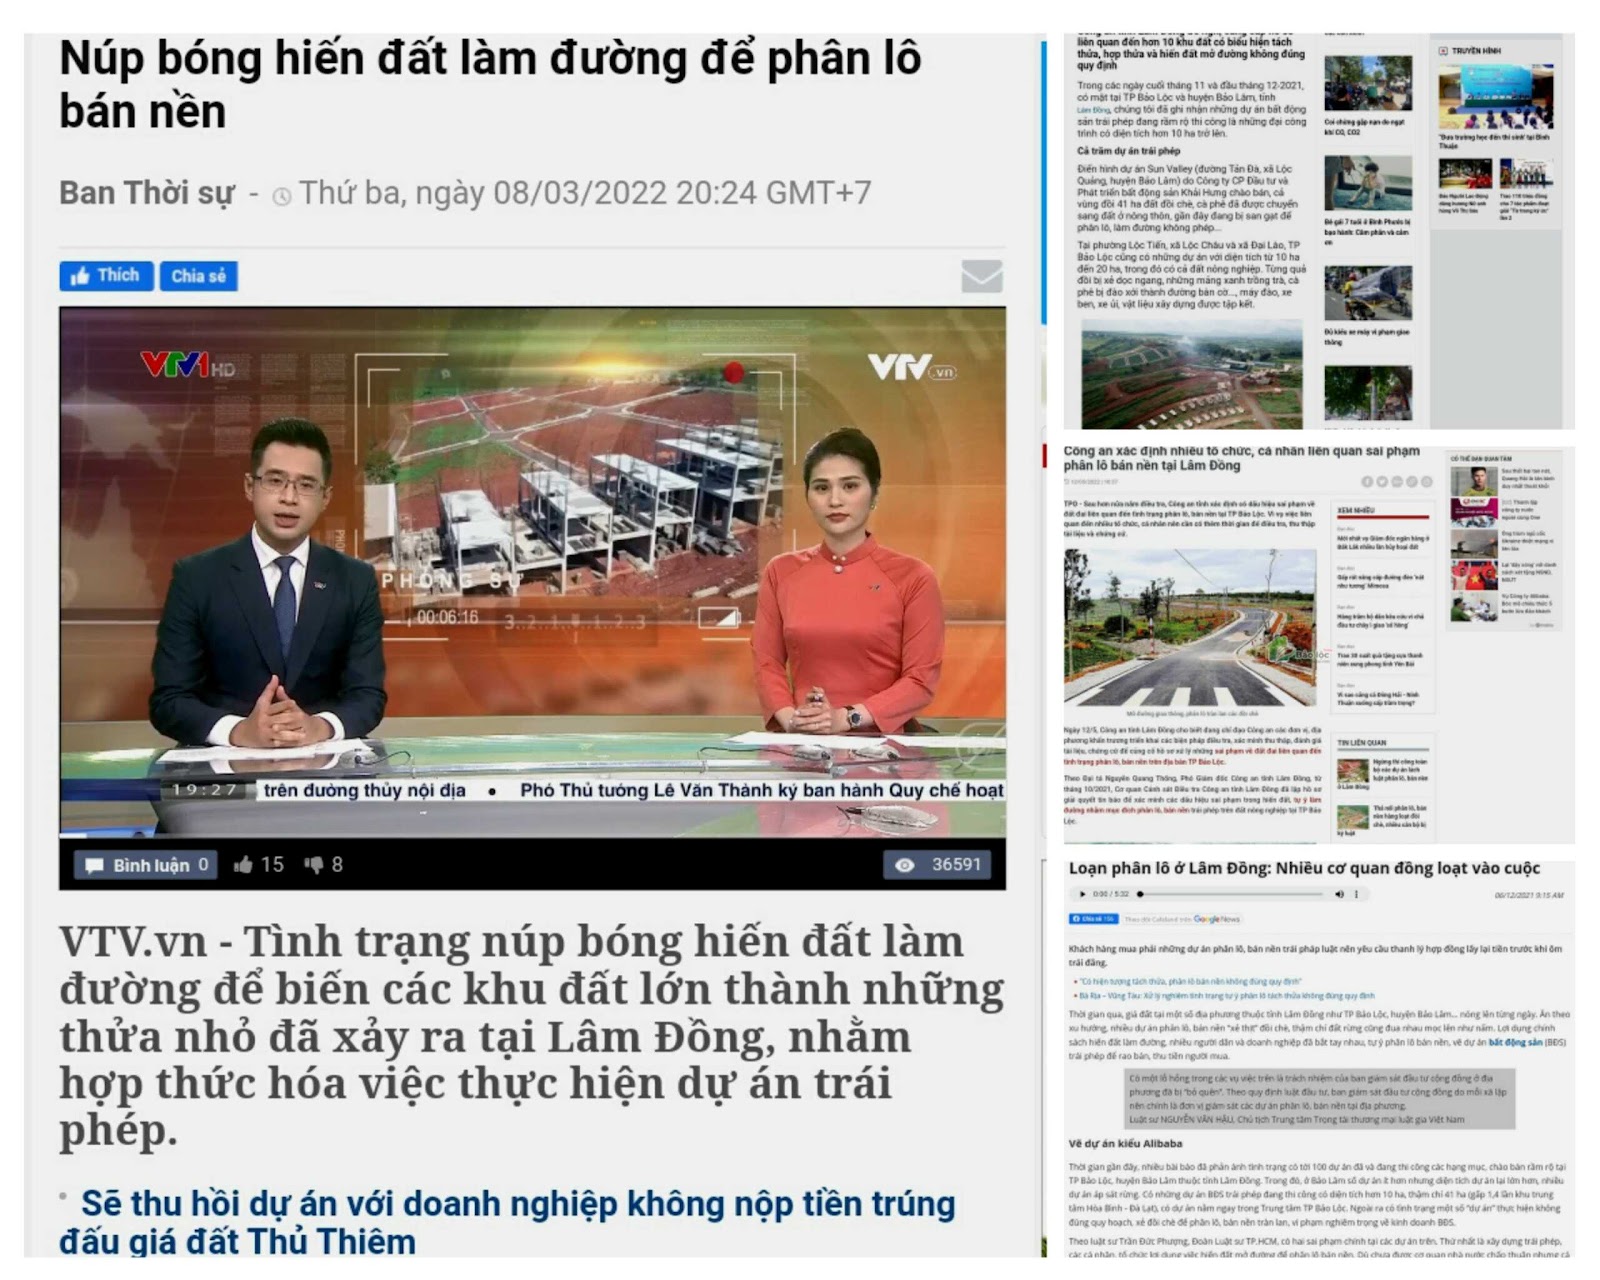 hình ảnh những bài báo nói về rủi ro khi mua bán bất động sản tại Bảo Lộc, những bài viết nói về vấn nạn phân lô tách thửa đất nền khu vực Bảo Lộc.